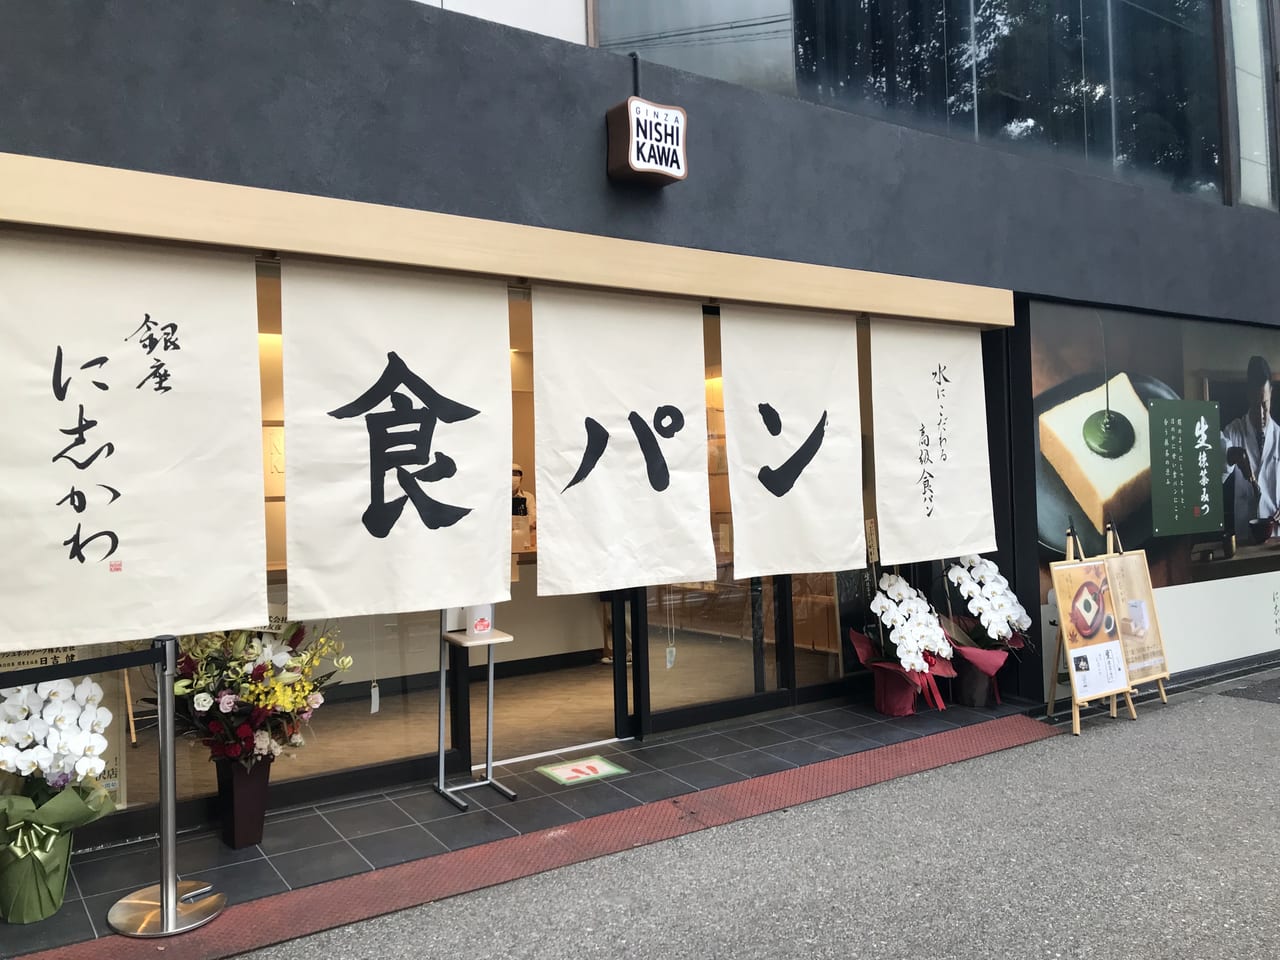 環七通り沿い、龍雲寺交差点近くに銀座に志かわ世田谷野沢店が2021年10月15日にオープンしました。